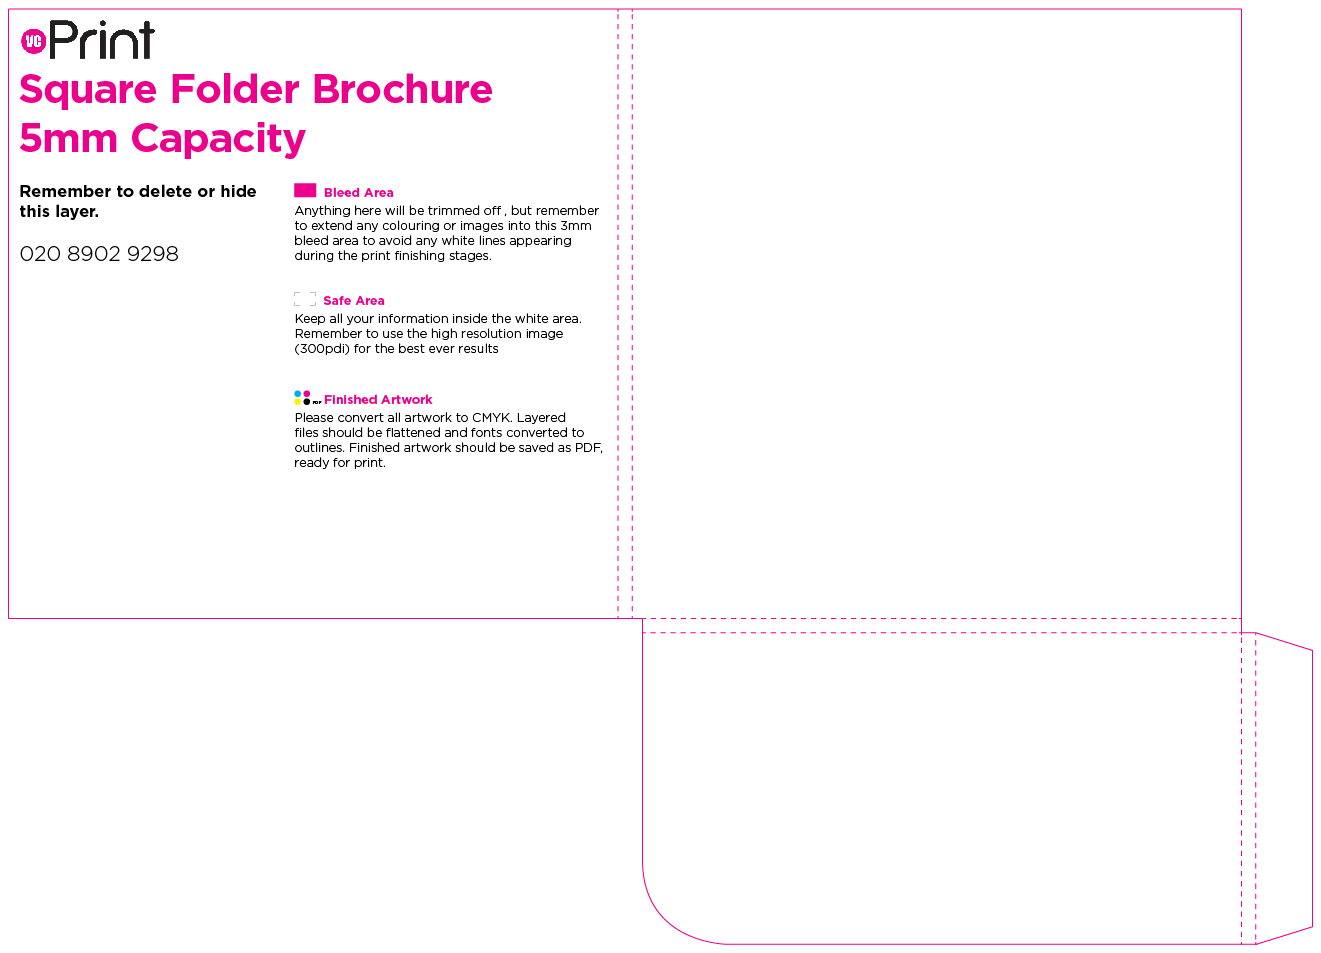 Square Folder Brochures Artwork File 3